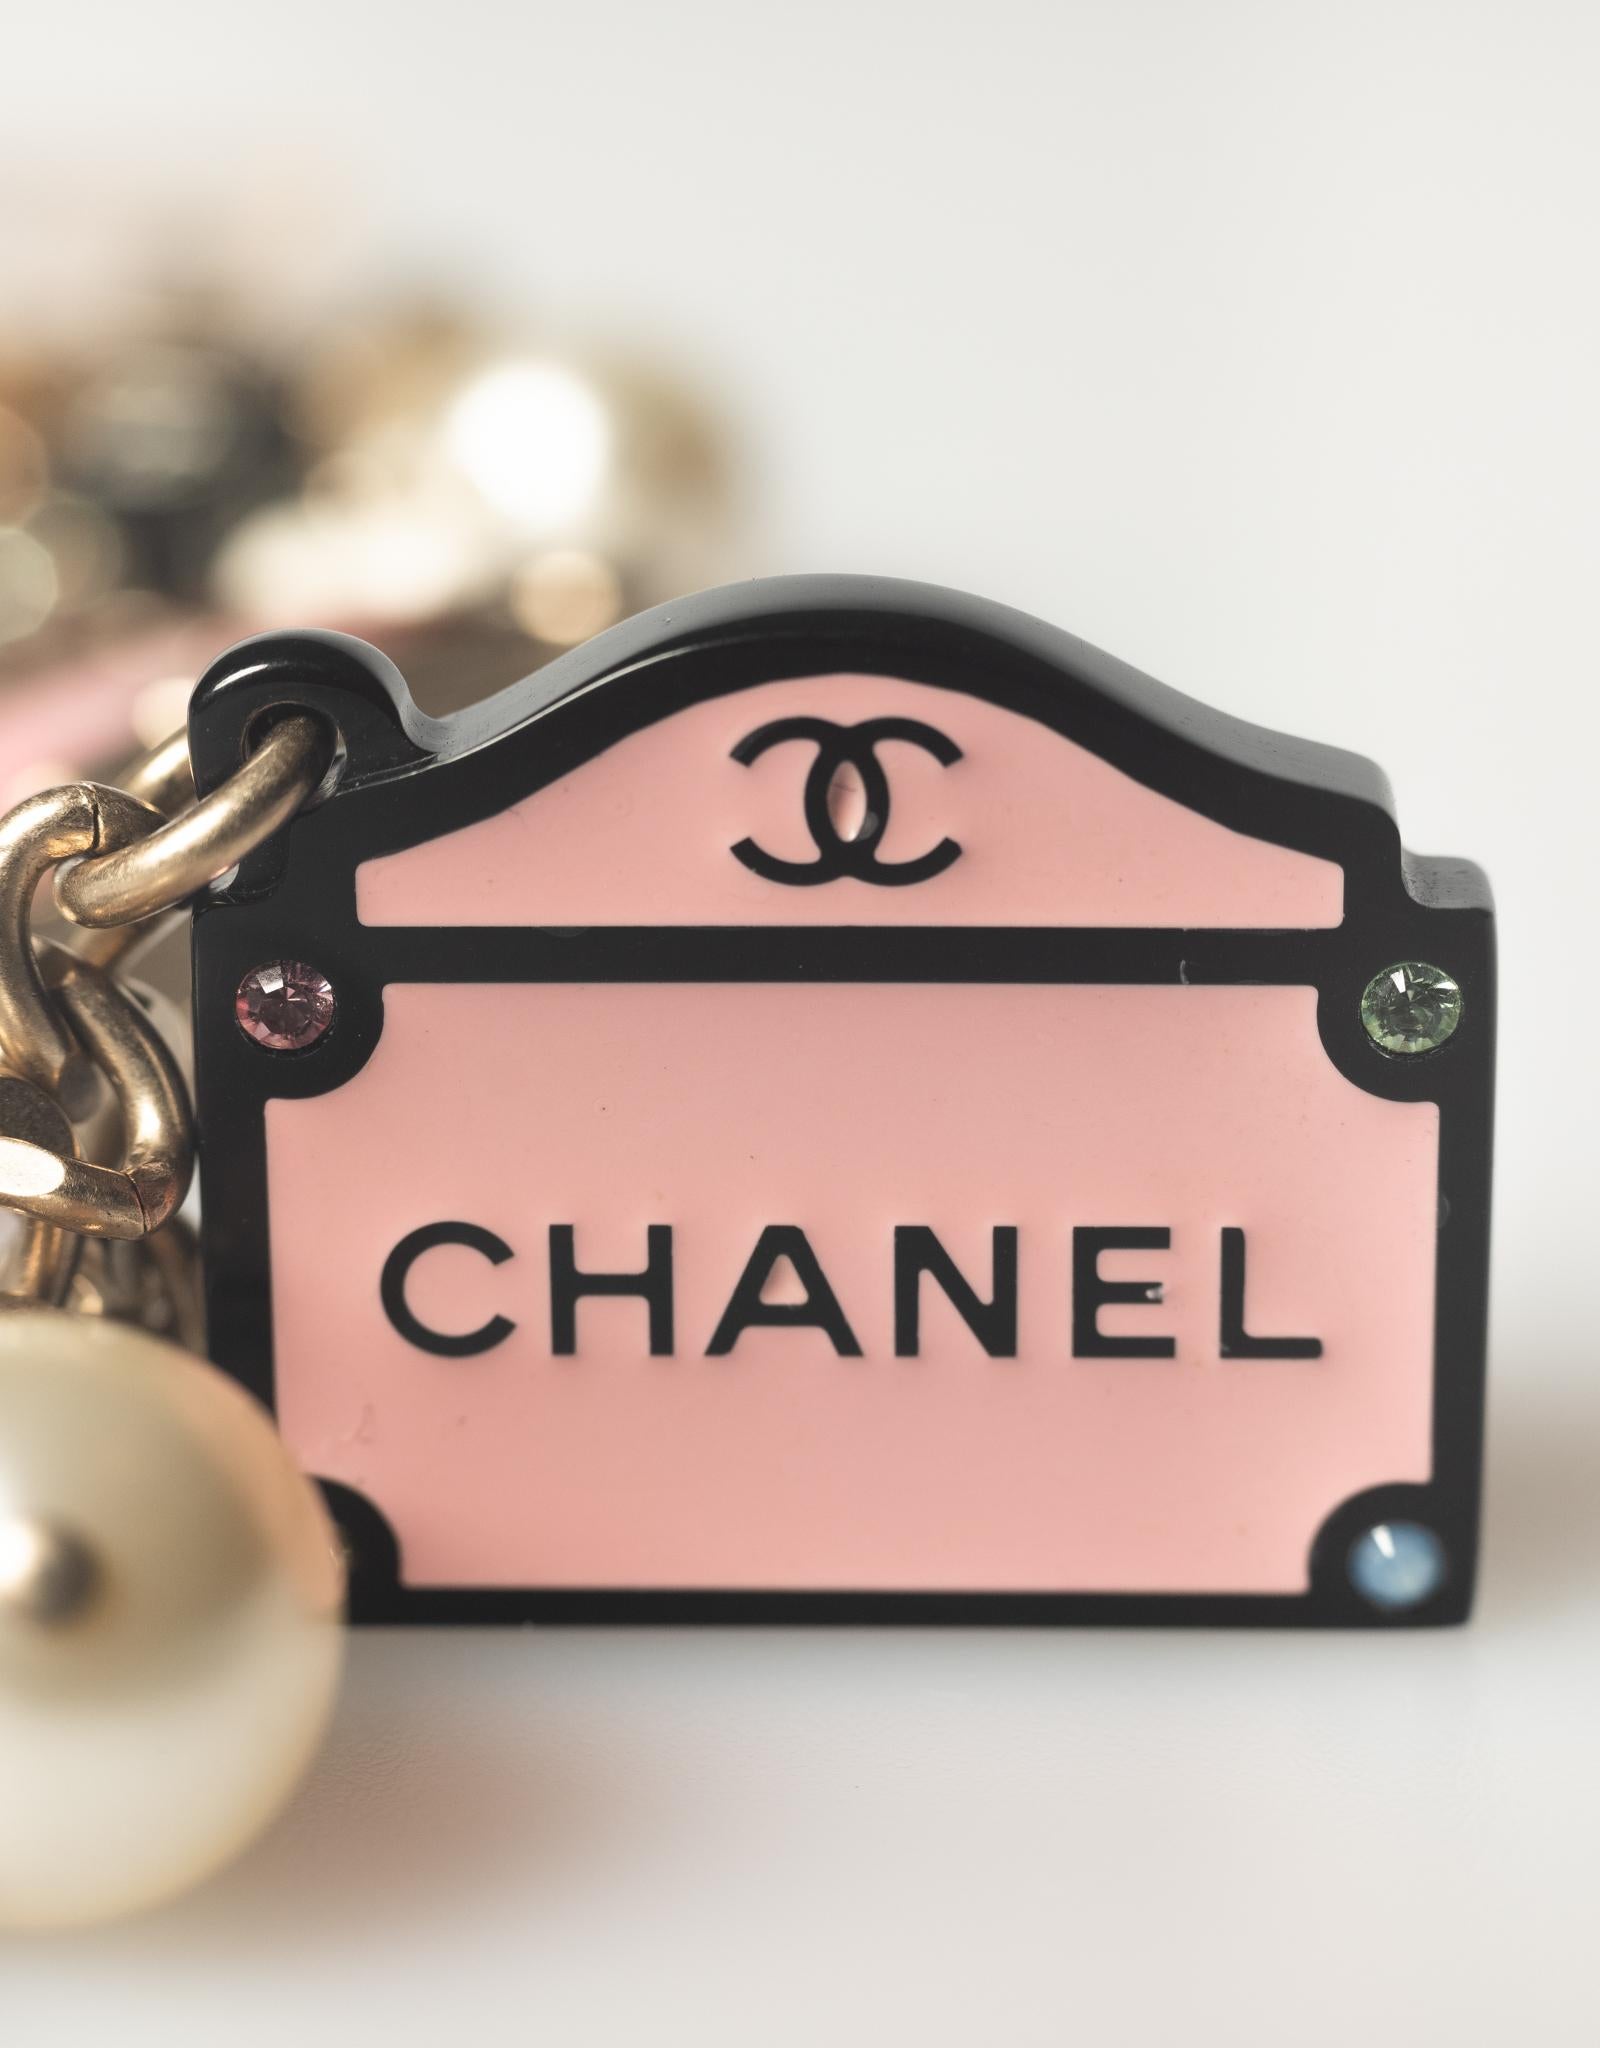 Chanel Crystal & Faux Pearl Paris Souvenirs Charm Bracelet 1